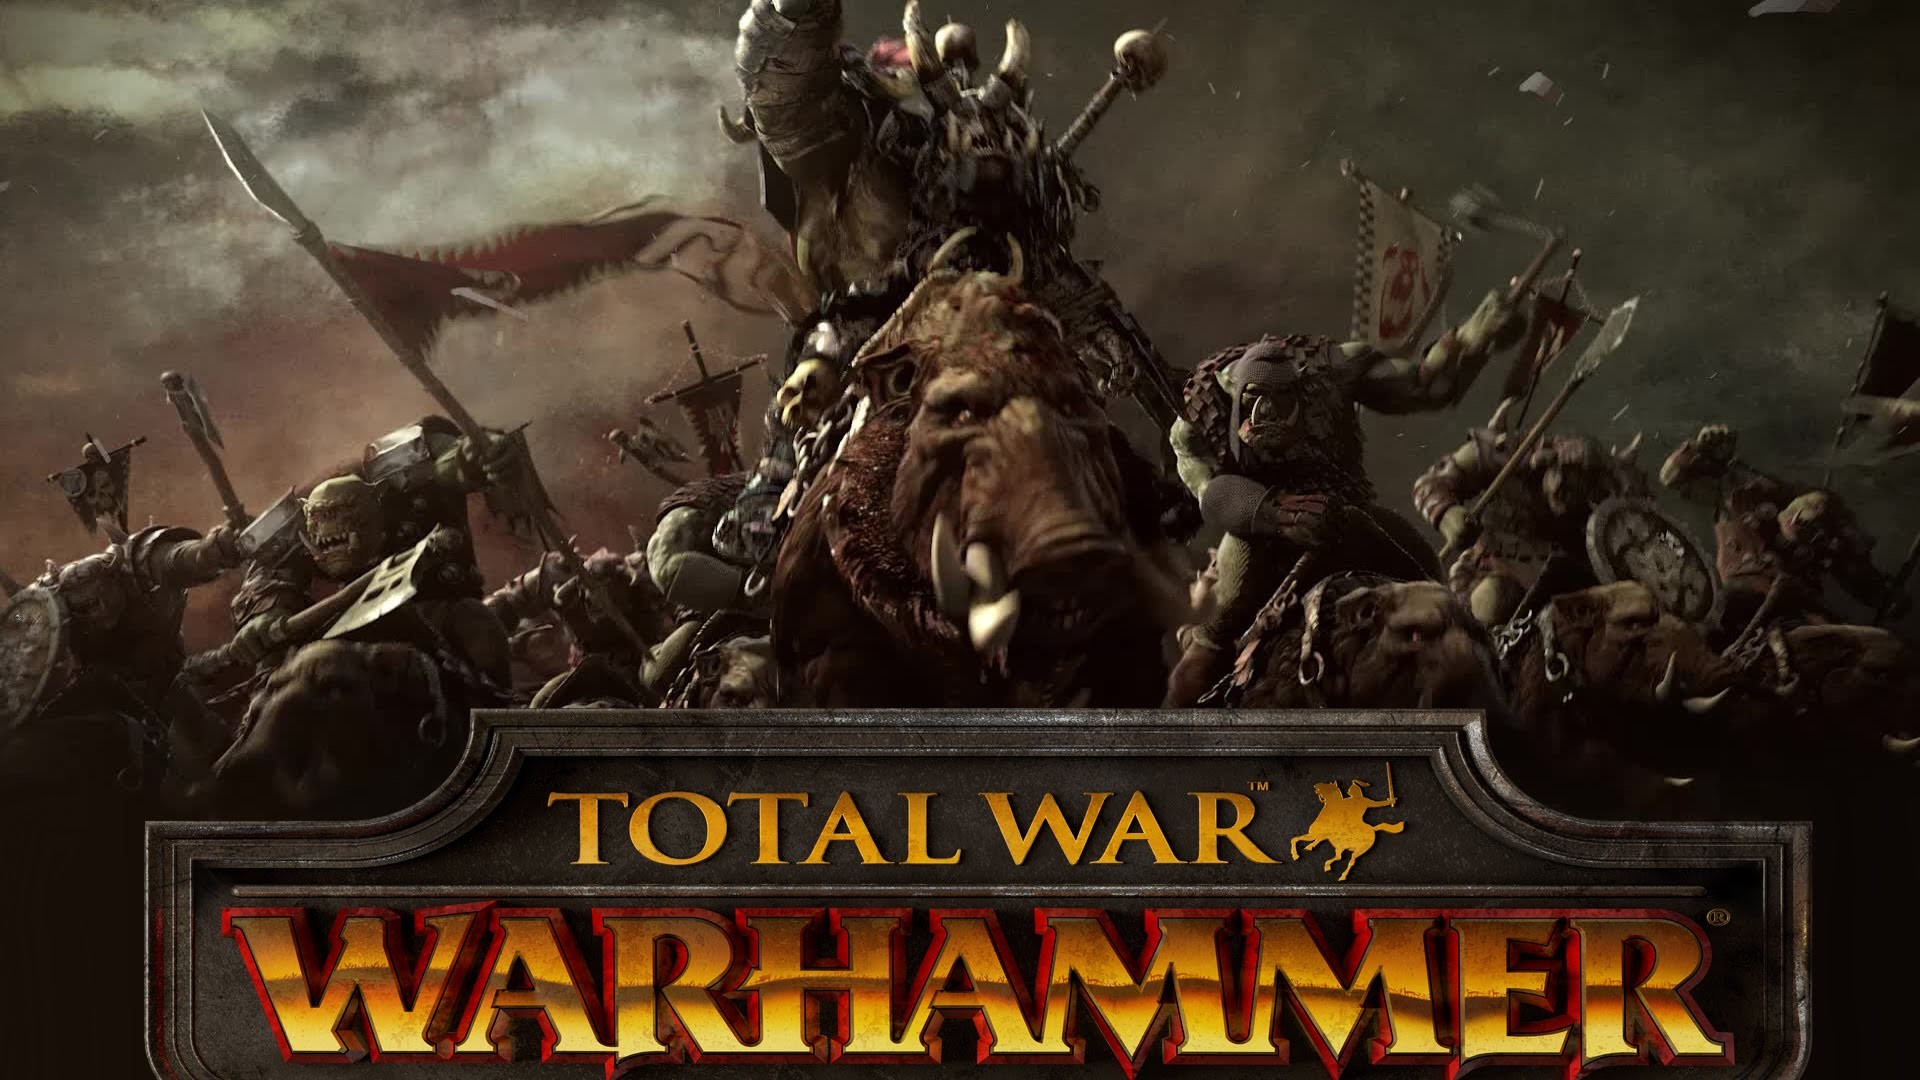 1920x1080 Total War: Warhammer - Announcement Cinematic Trailer